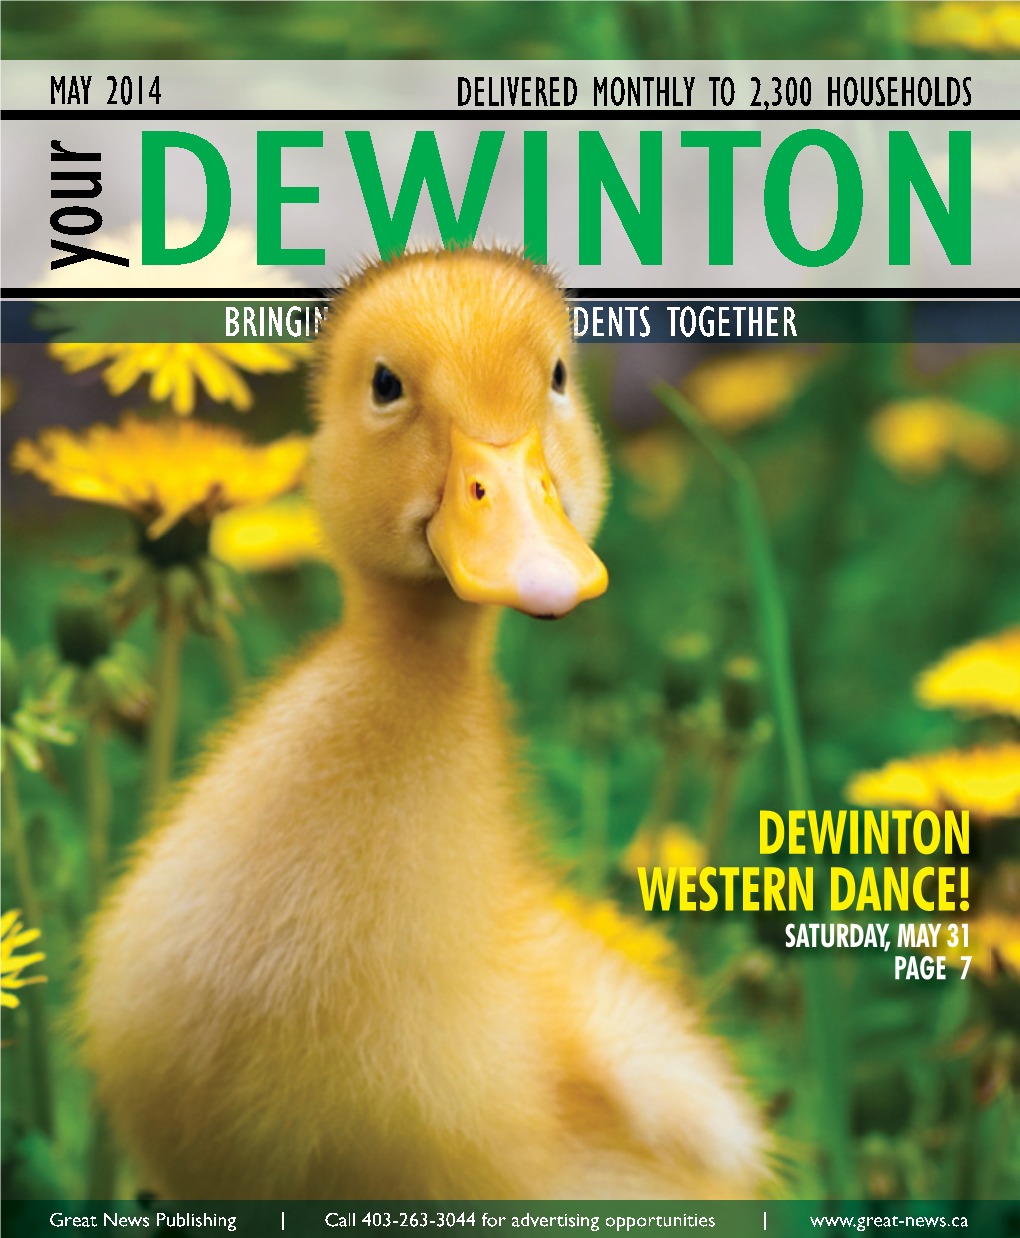 Dewinton Western Dance! Saturday, May 31 Page 7